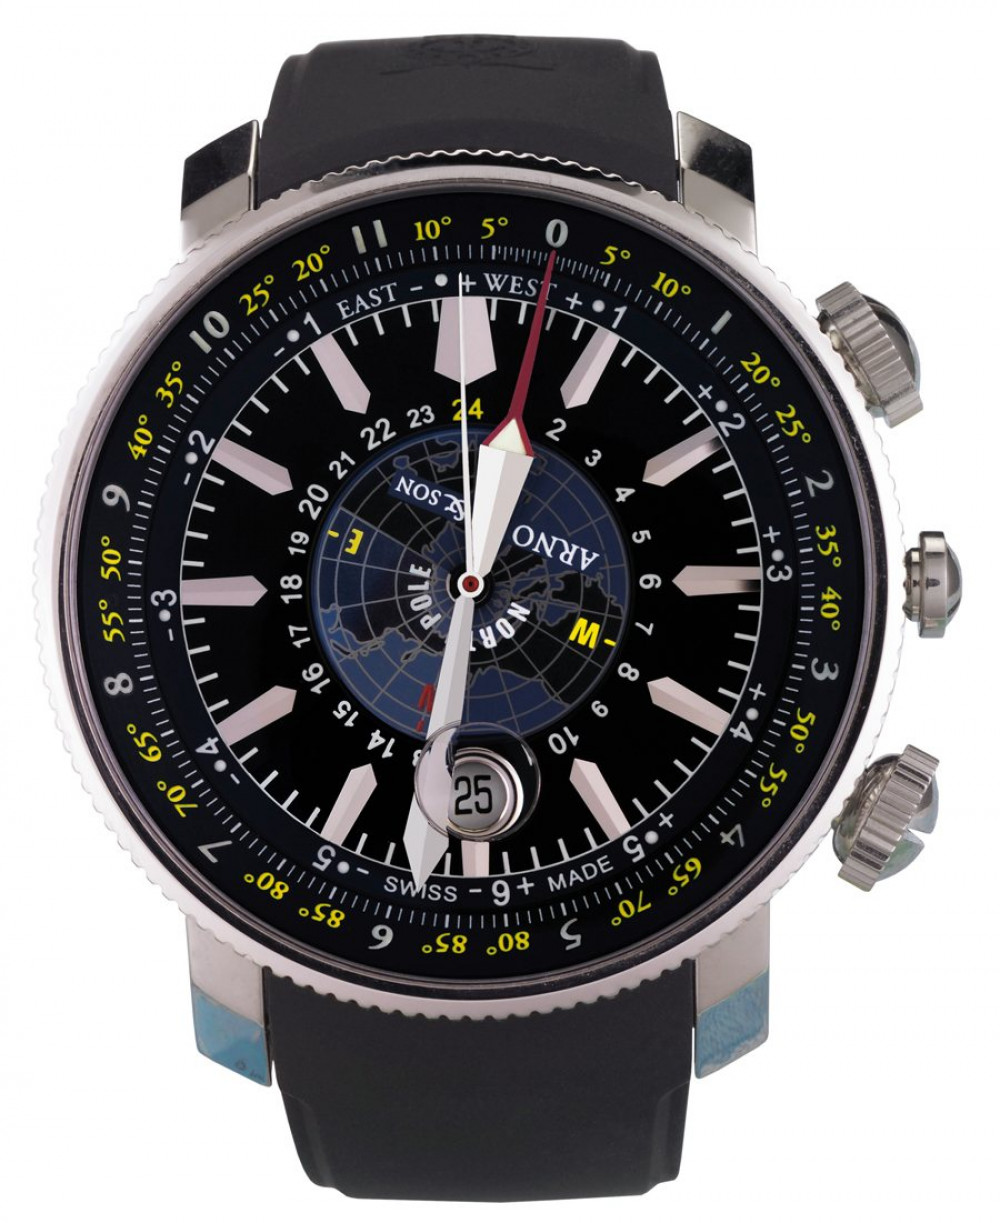 Zegarek firmy Arnold & Son, model Longitude II Blue Ice